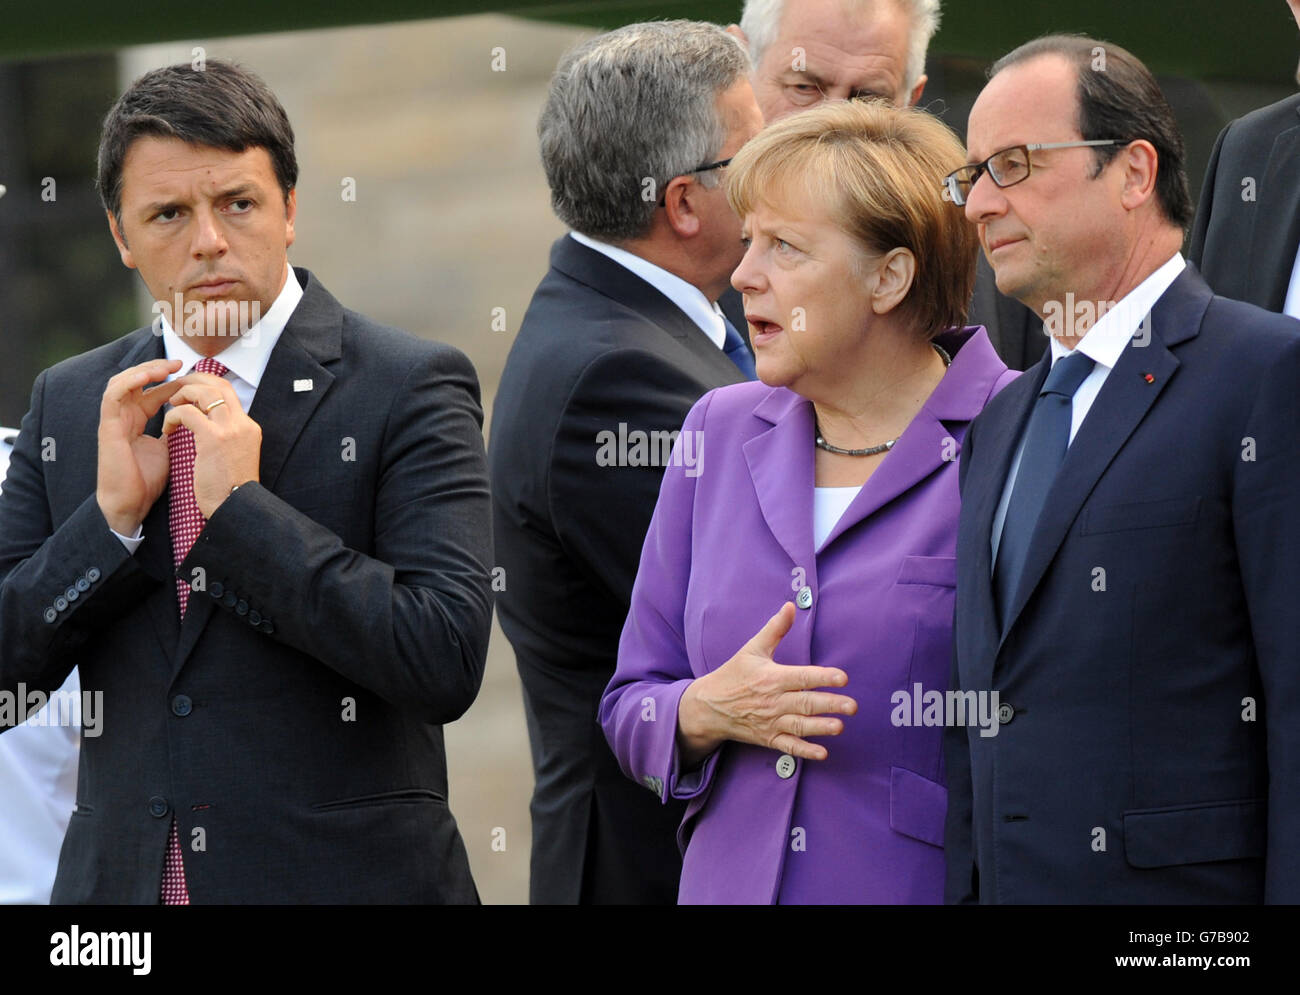 Le Premier ministre italien Matteo Renzi, la chancelière allemande Angela Merkel et le président français Françoise Hollande se réunissent pour assister à un flip d'avions militaires en provenance des pays membres de l'OTAN le dernier jour du sommet au Celtic Manor Resort de Newport, au sud du pays de Galles. Banque D'Images